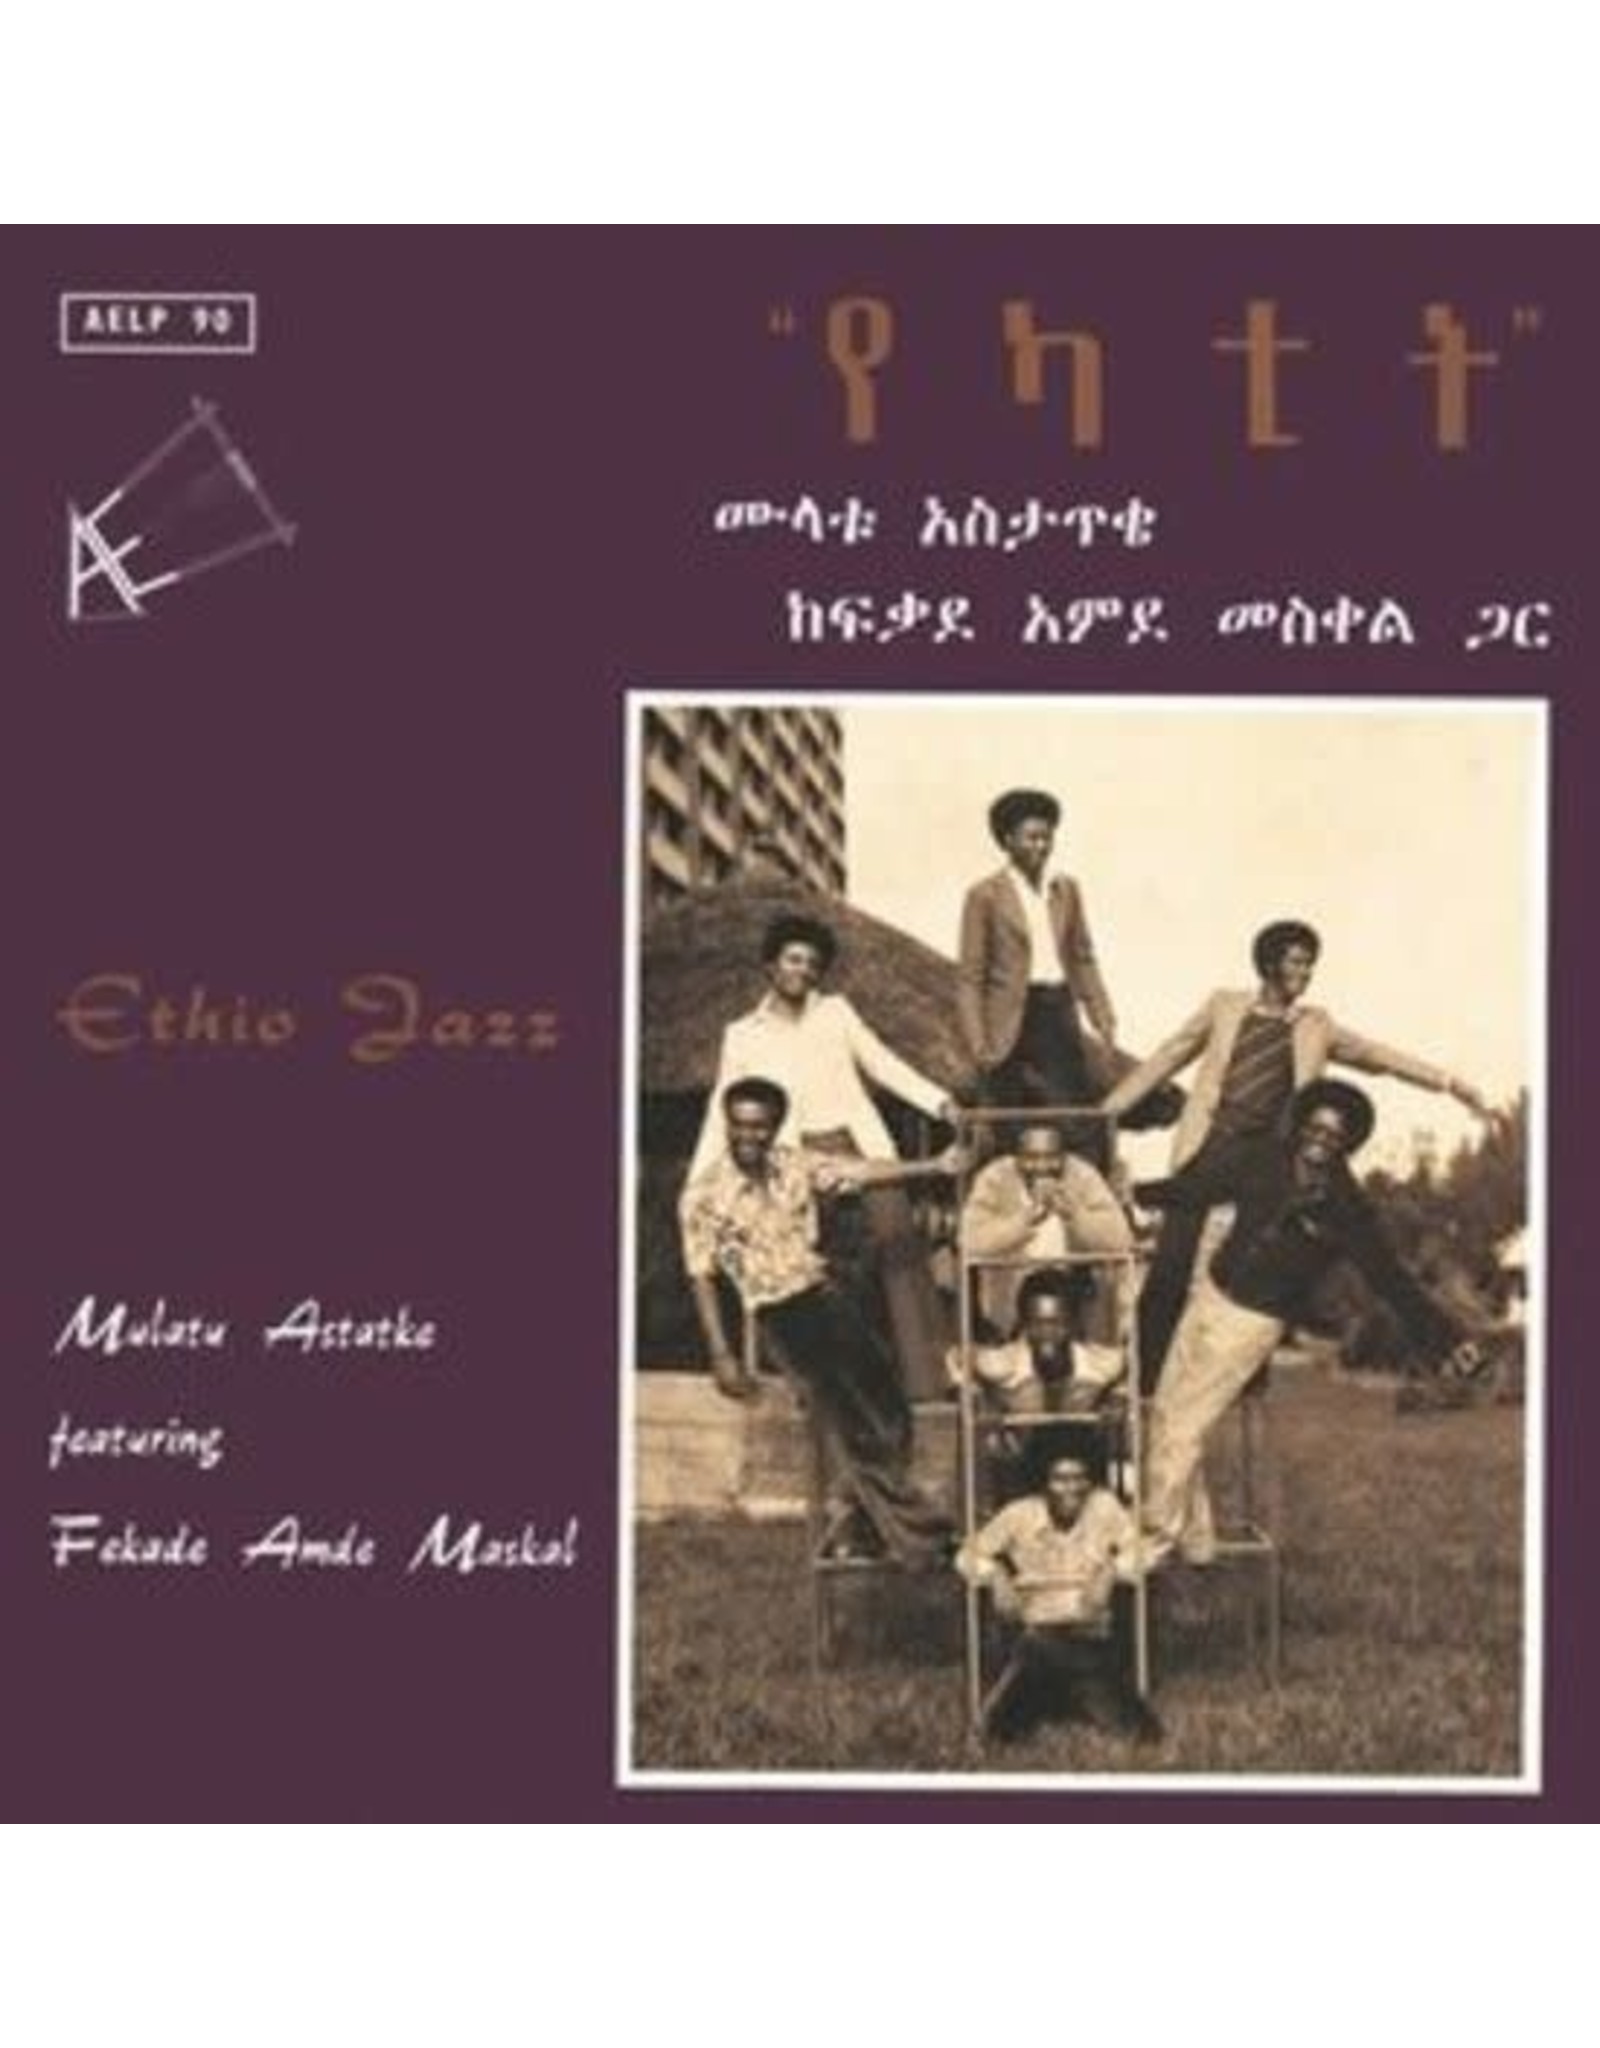 P-Vine Astatke, Mulatu: Ethio Jazz LP